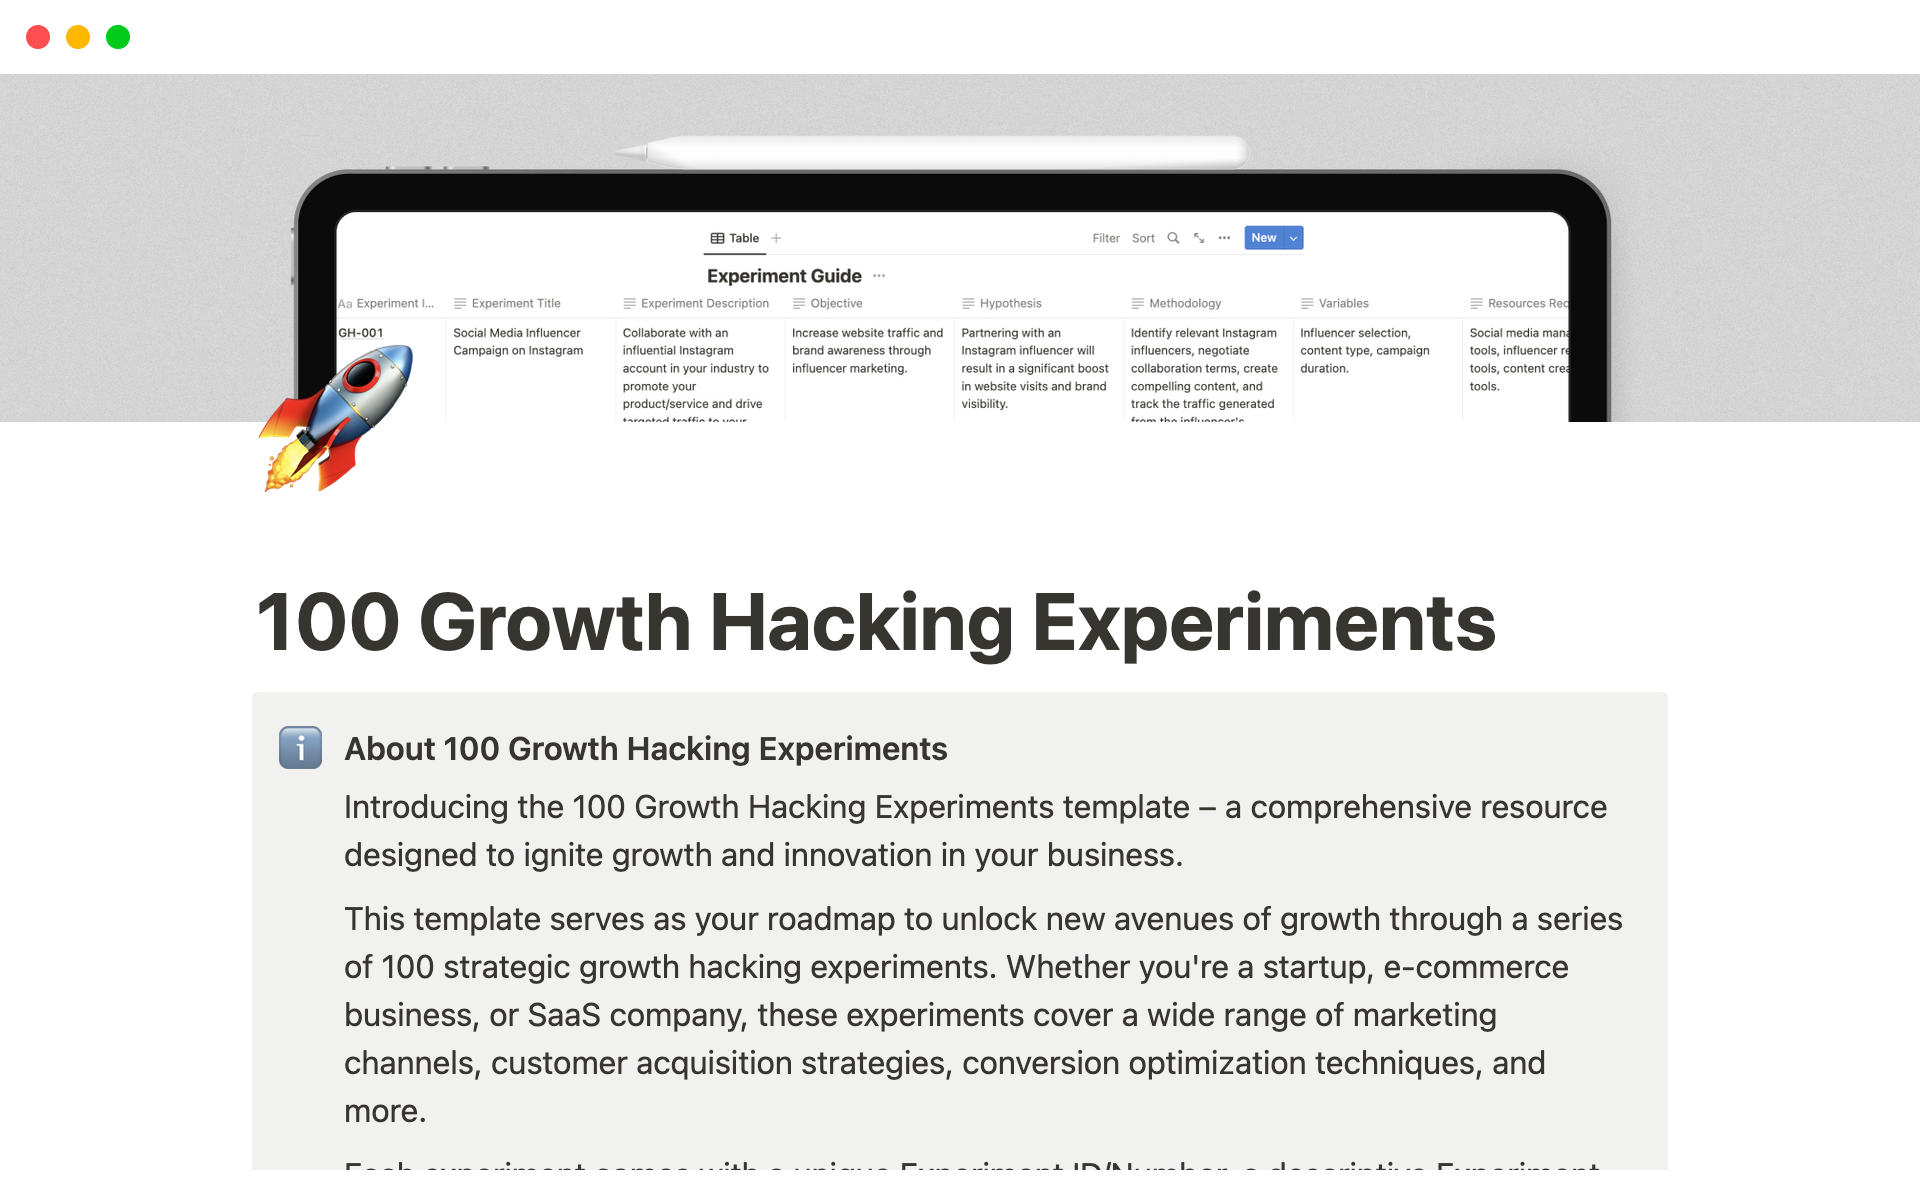 Aperçu du modèle de 100 Growth Hacking Experiments